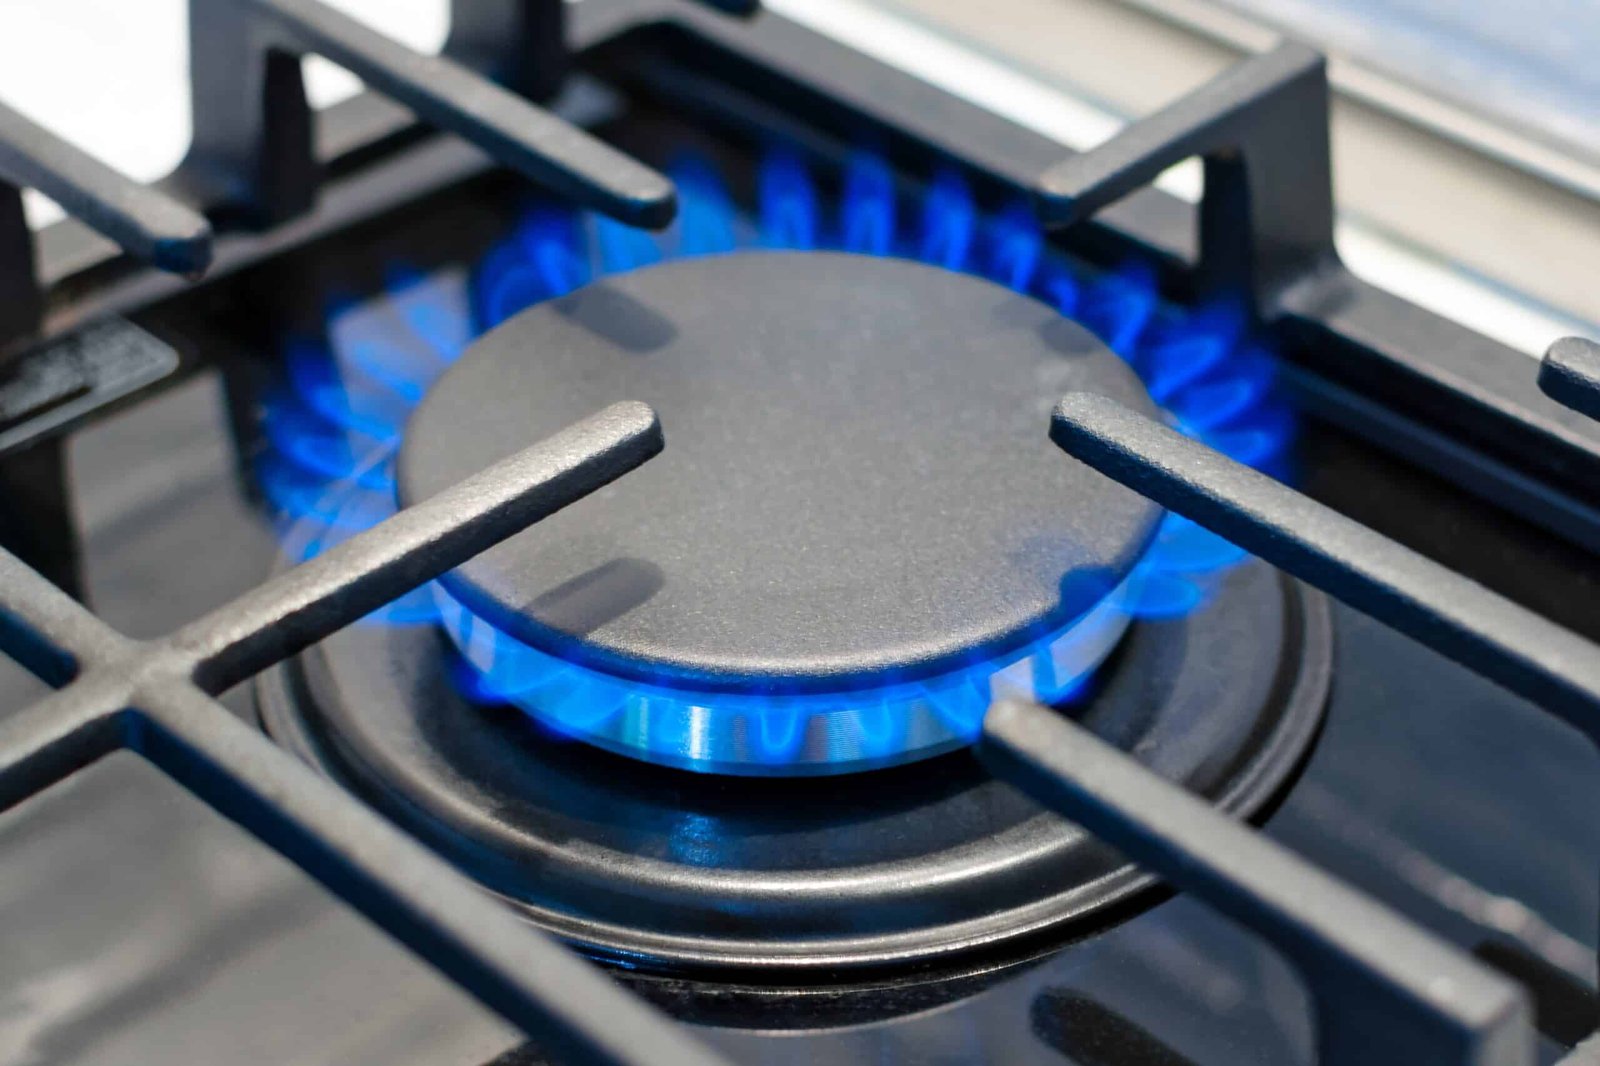 burning gas burner on the stove 2022 11 01 04 35 04 utc scaled